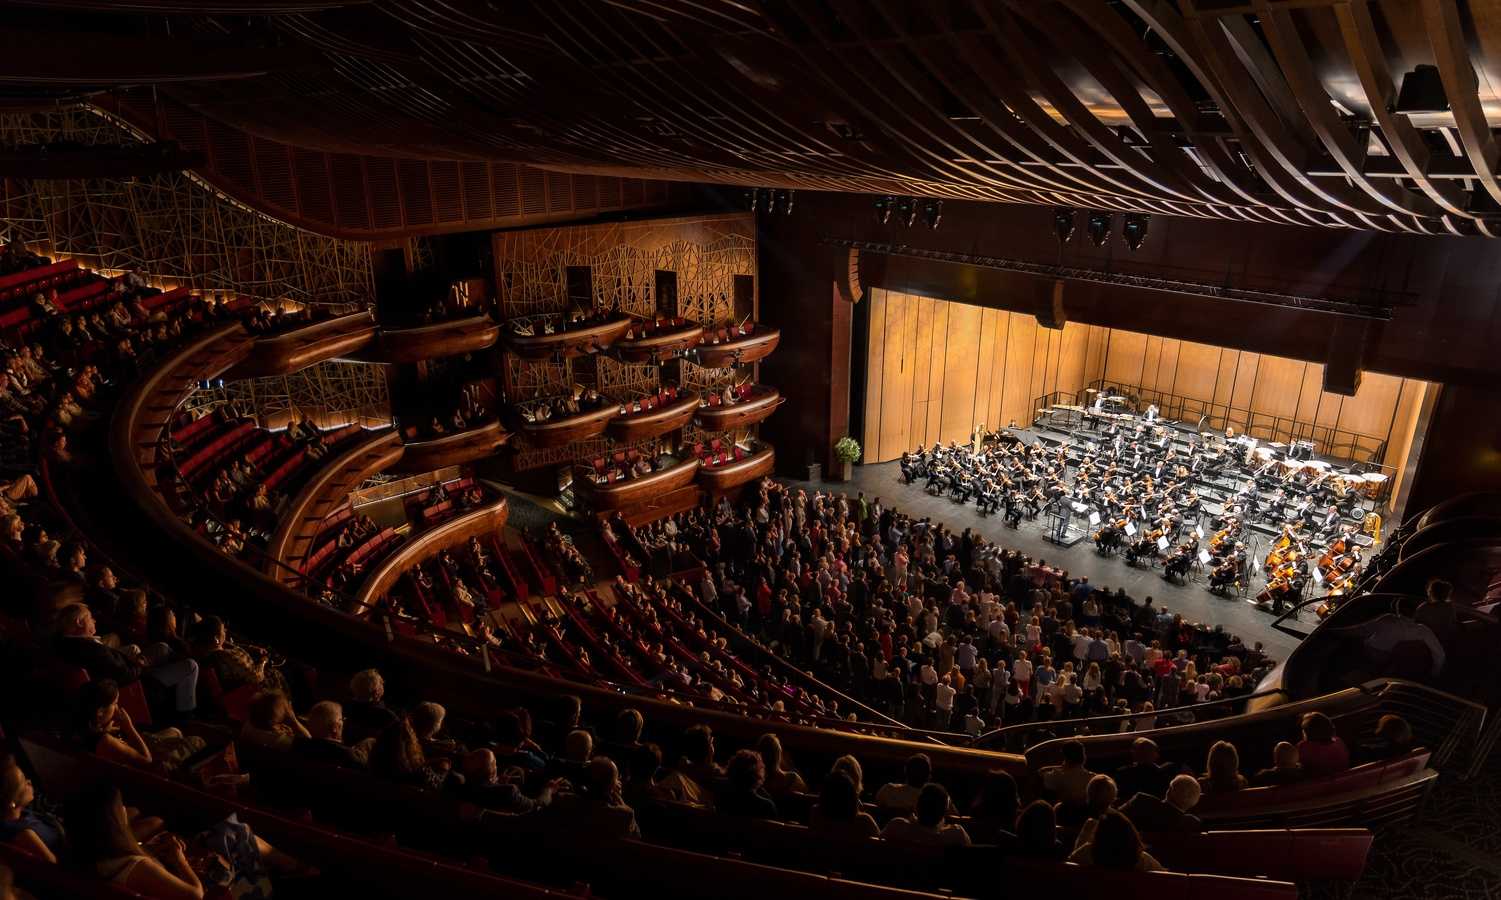 Dubai Opera House image